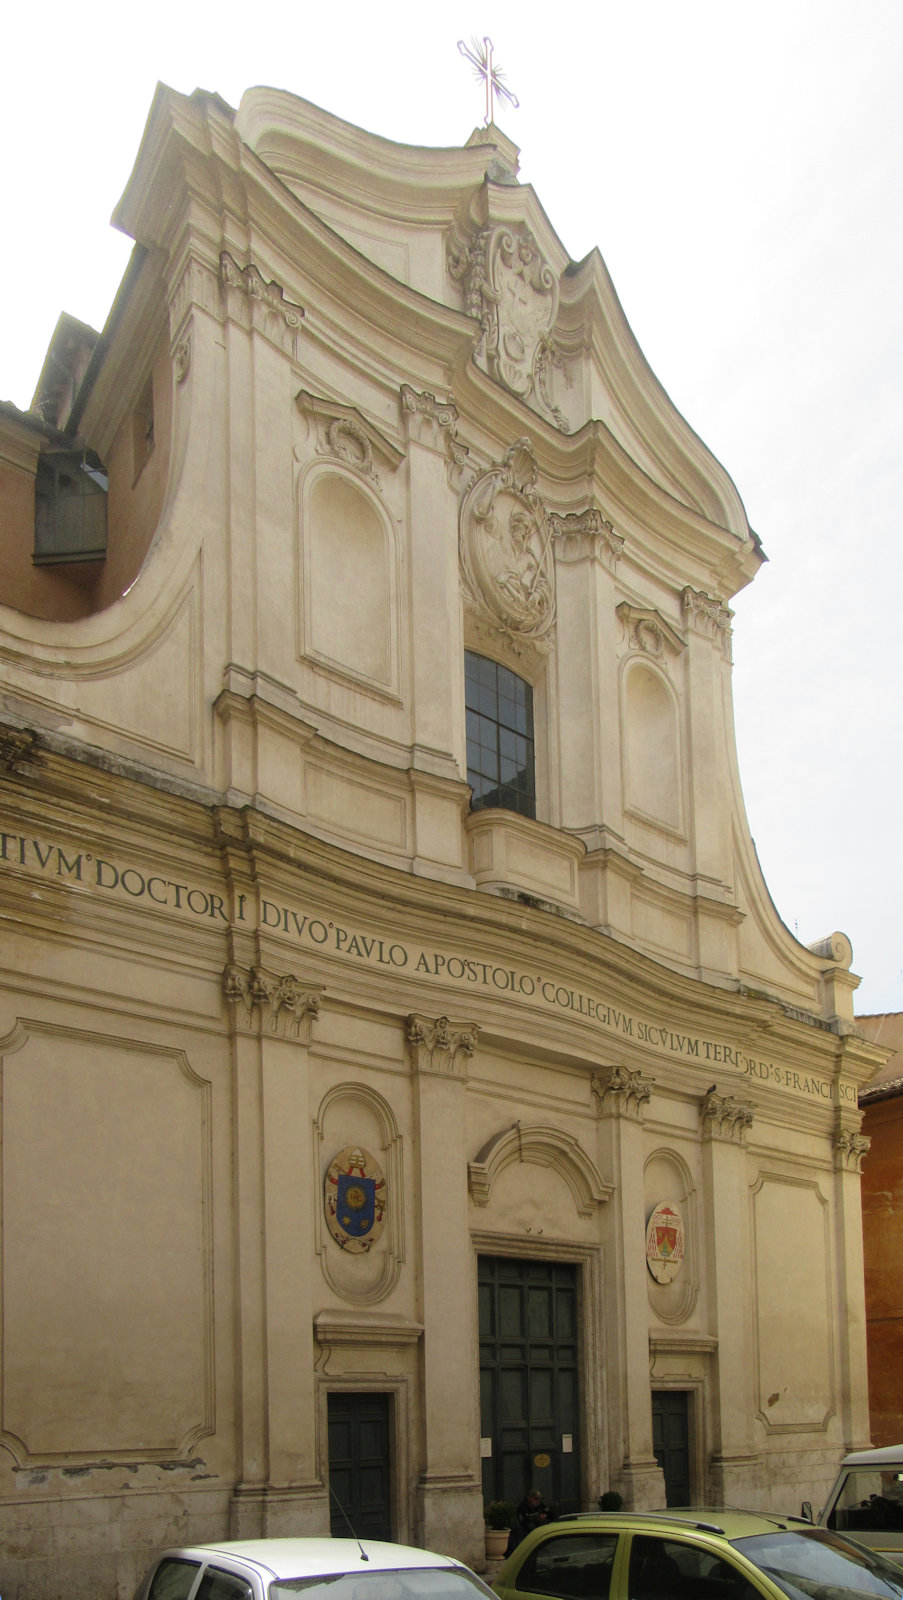 Am ersten Ort der Gefangenschaft - tatsächlich: Wohnort mit Hausarrest - wurde ein frühchristliches Oratorium errichtet, daneben wurde von Papst Silvester I. eine Kirche erbaut, beide zusammen sind heute die Kirche San Paolo alla Regola